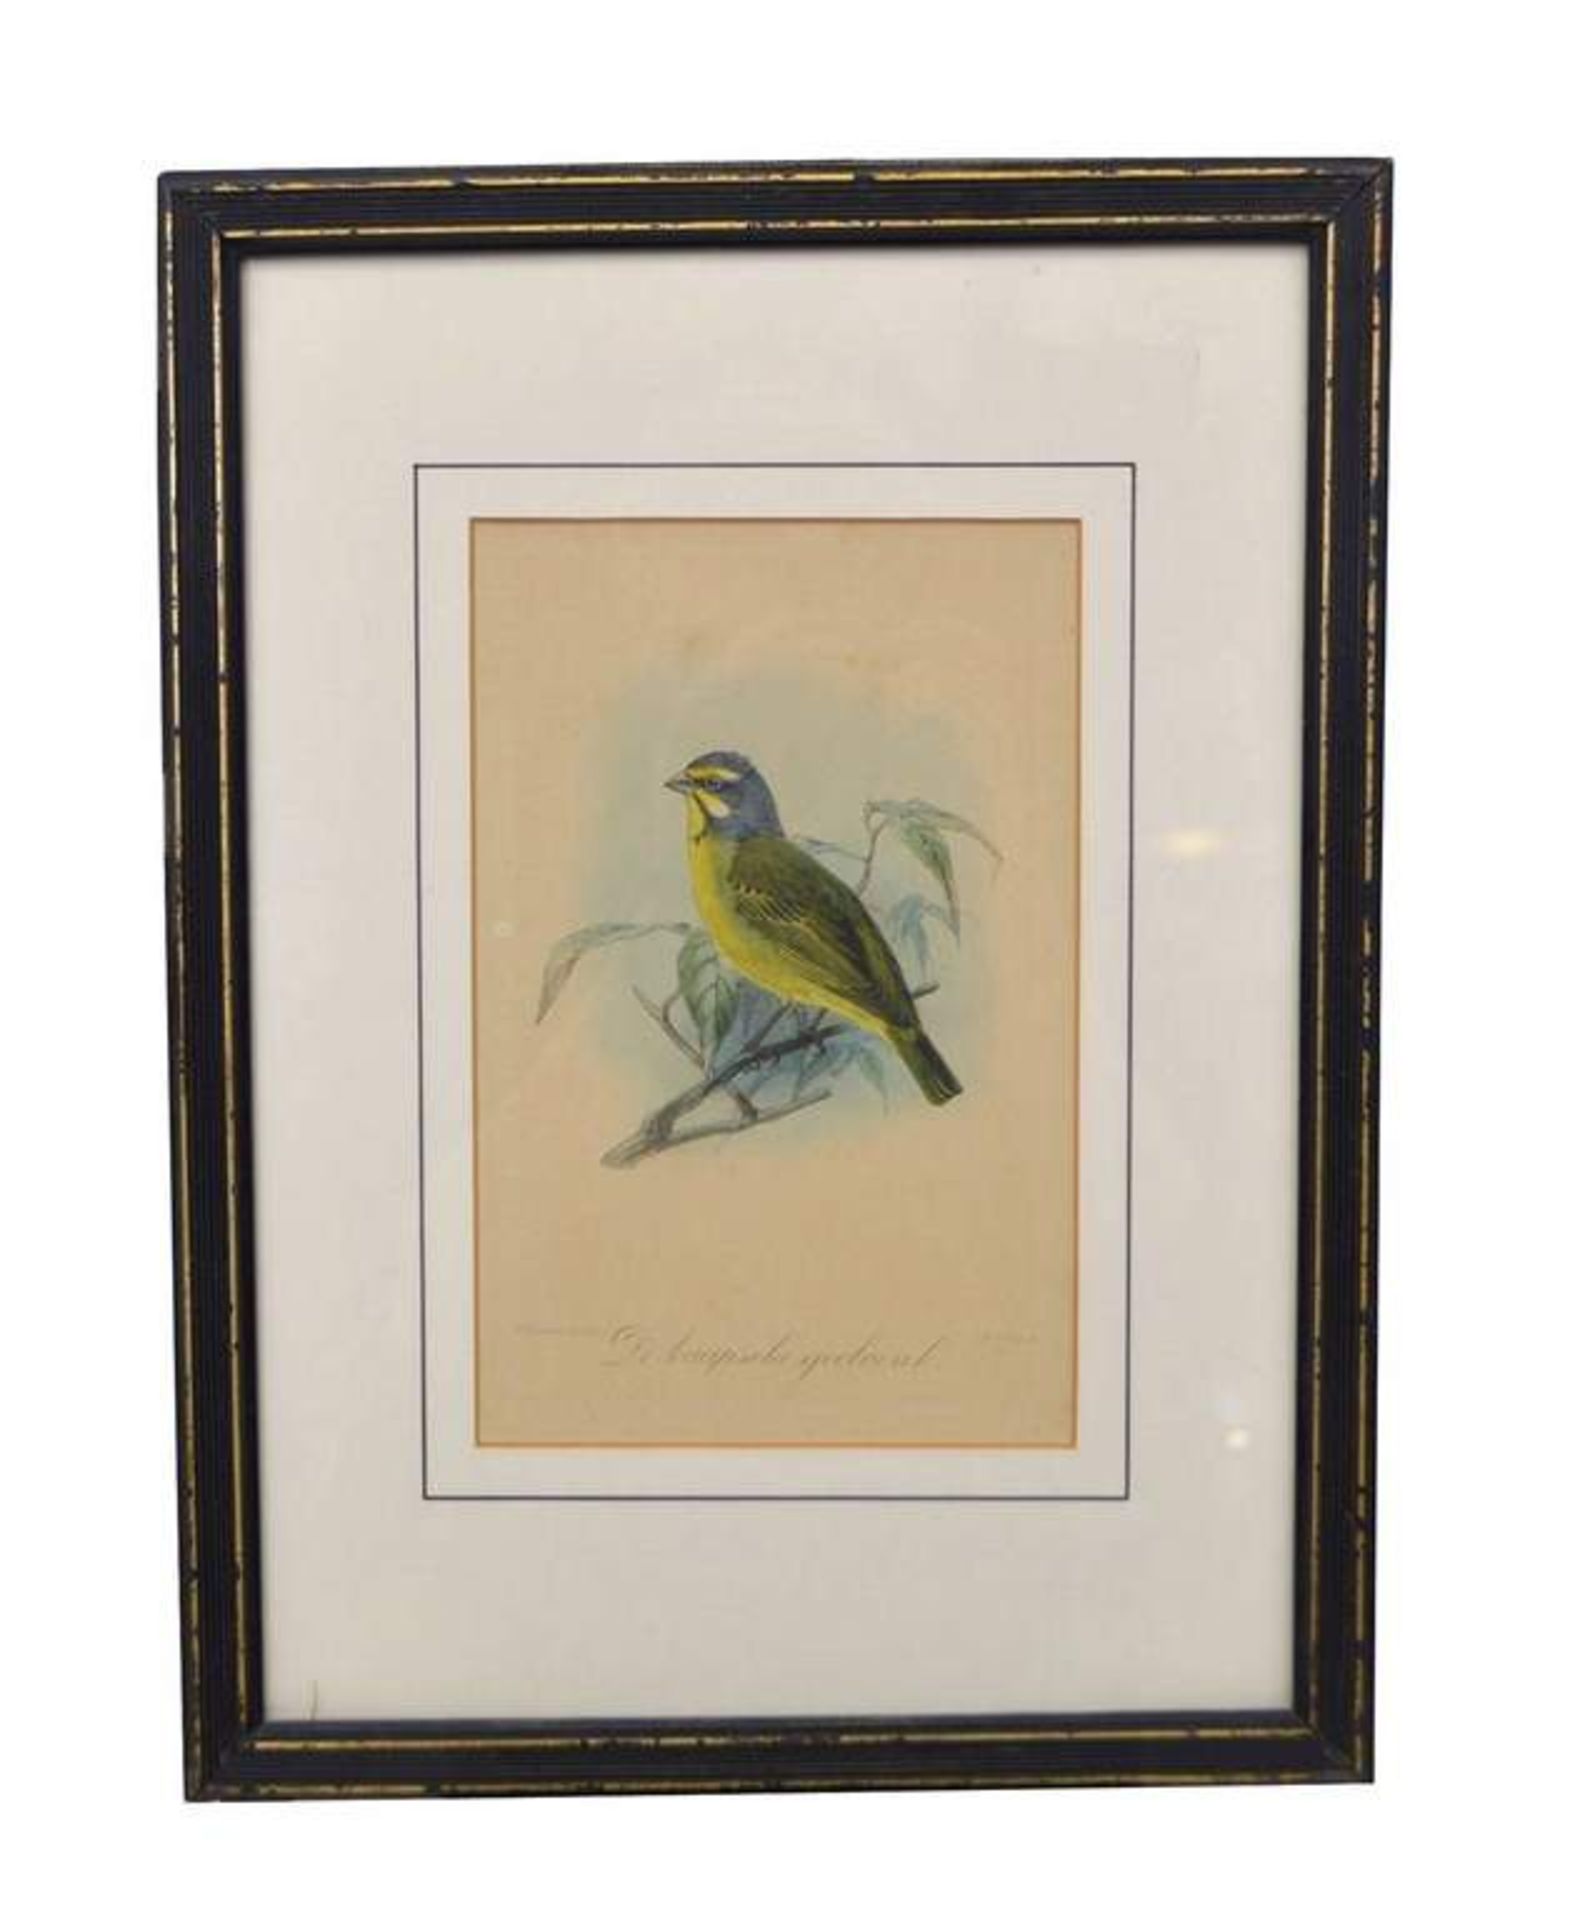 Stahlstich Vogel auf Ast, coloriert, im Rahmen, 30 X 40 cm, 19. Jh.